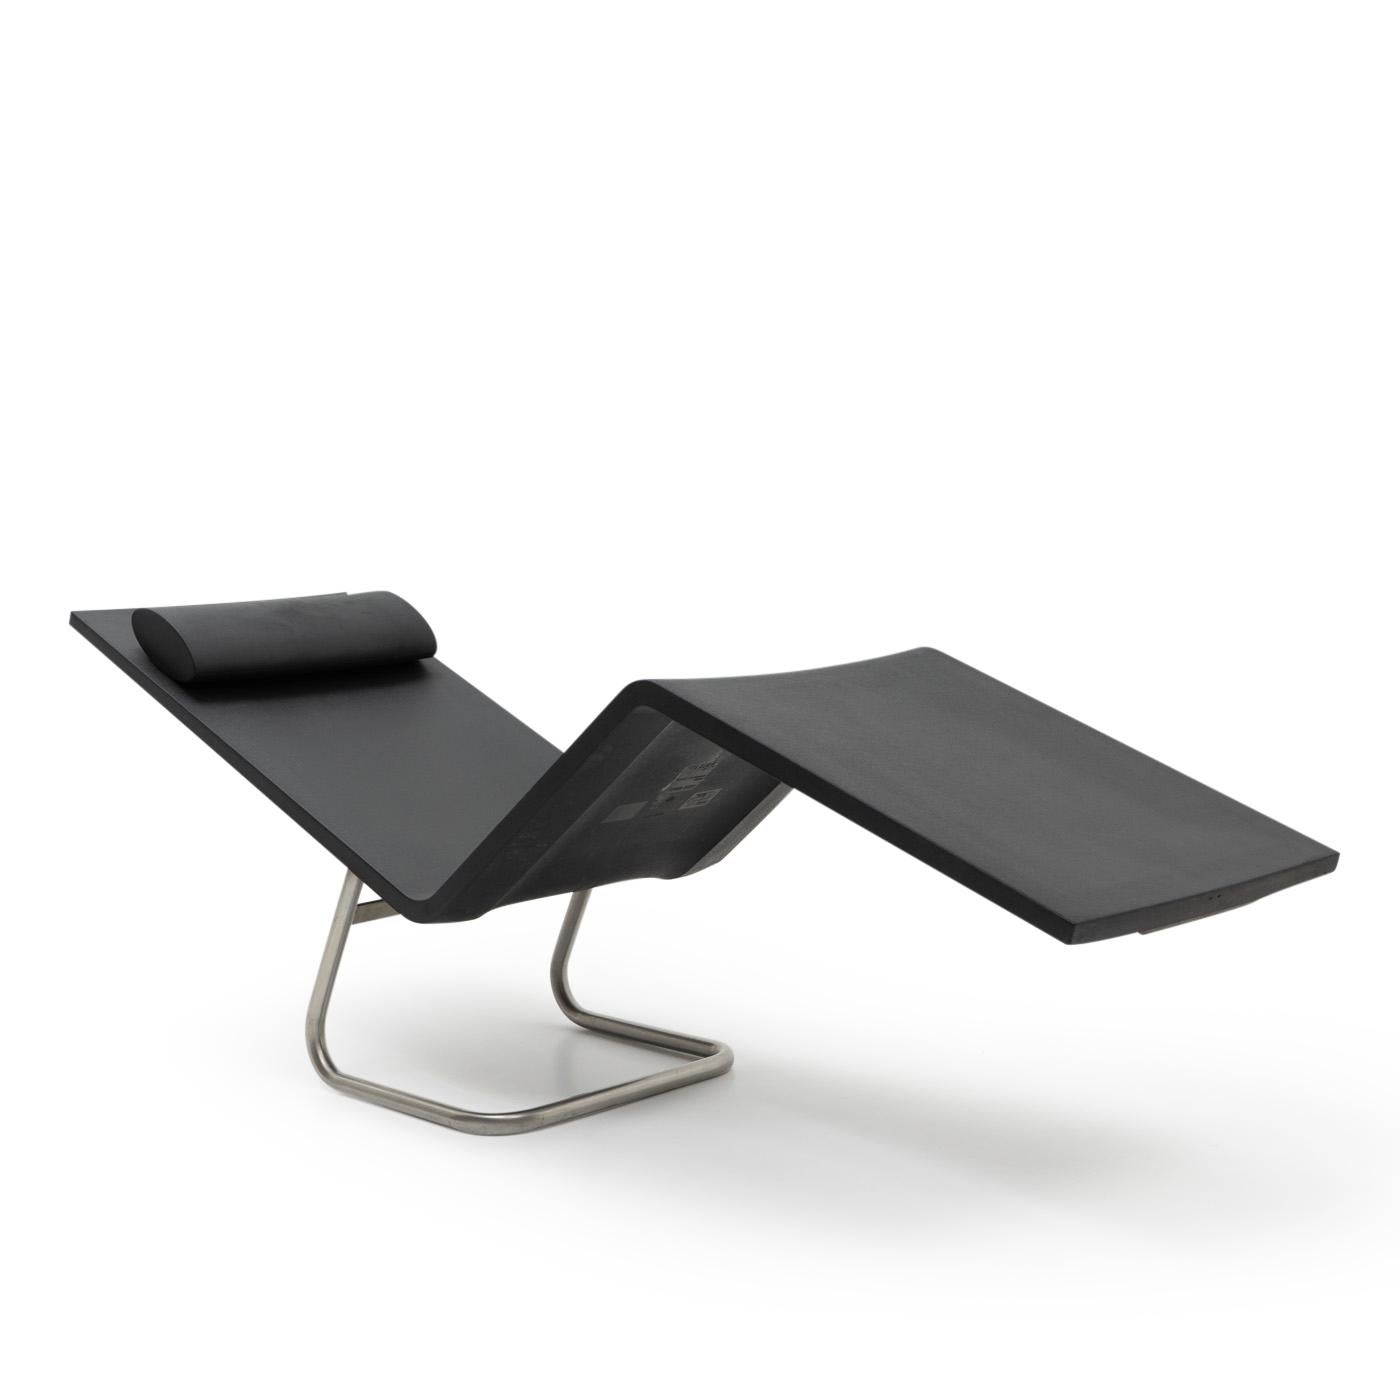 Lounge Chair von Maarten van Severen für Vitra ( 2000):

Diese bequemen Loungesessel können durch Verlagerung des Körpergewichts leicht (und sicher) nach hinten gekippt werden, so dass eine Liege entsteht. Beachten Sie, dass diese Ausgabe für den